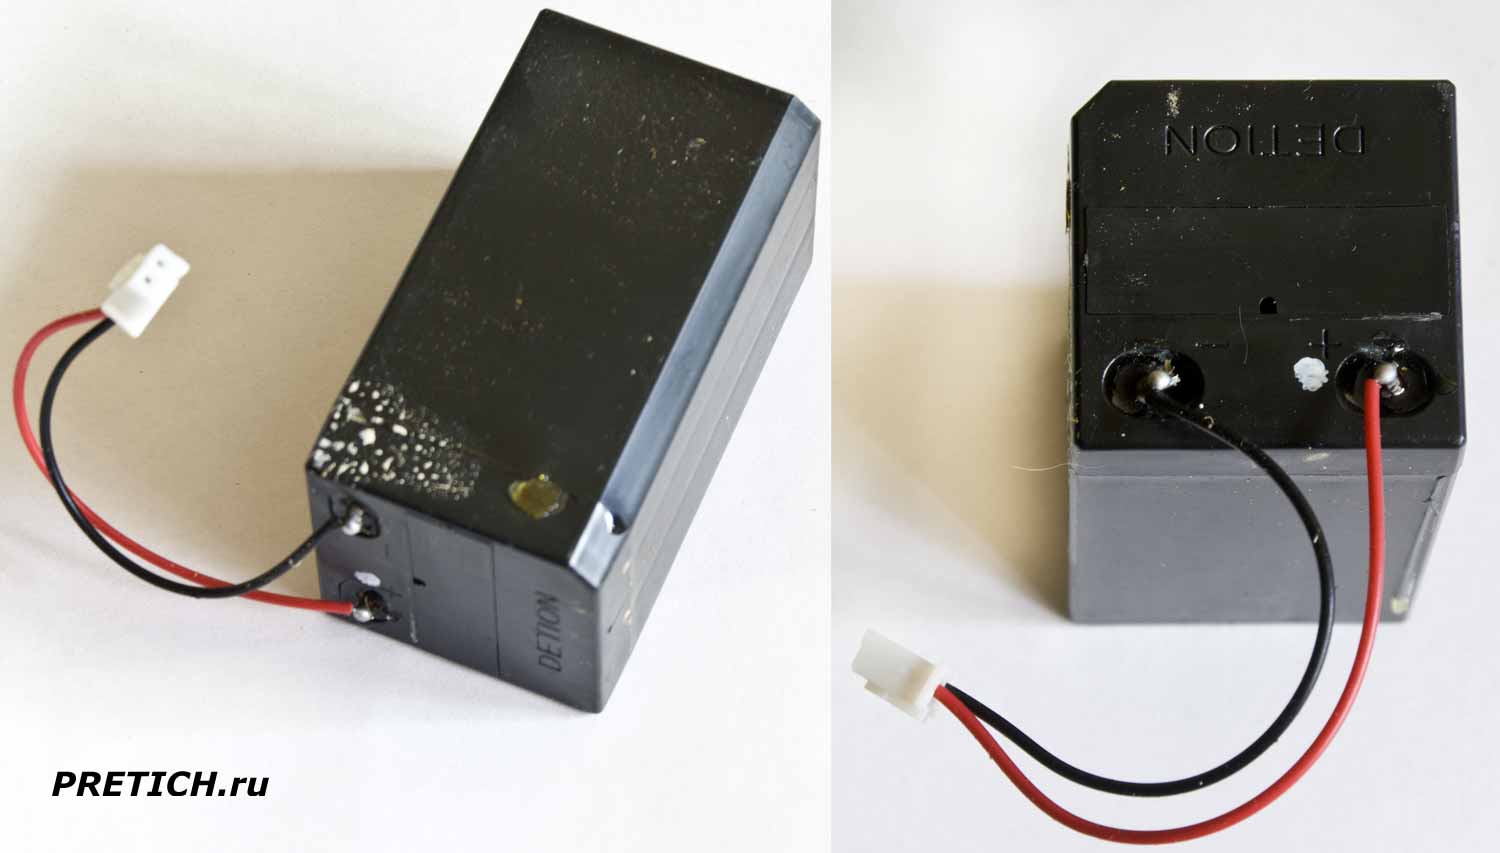 DETION свинцово-кислотный аккумулятор из фонарика, какие параметры?